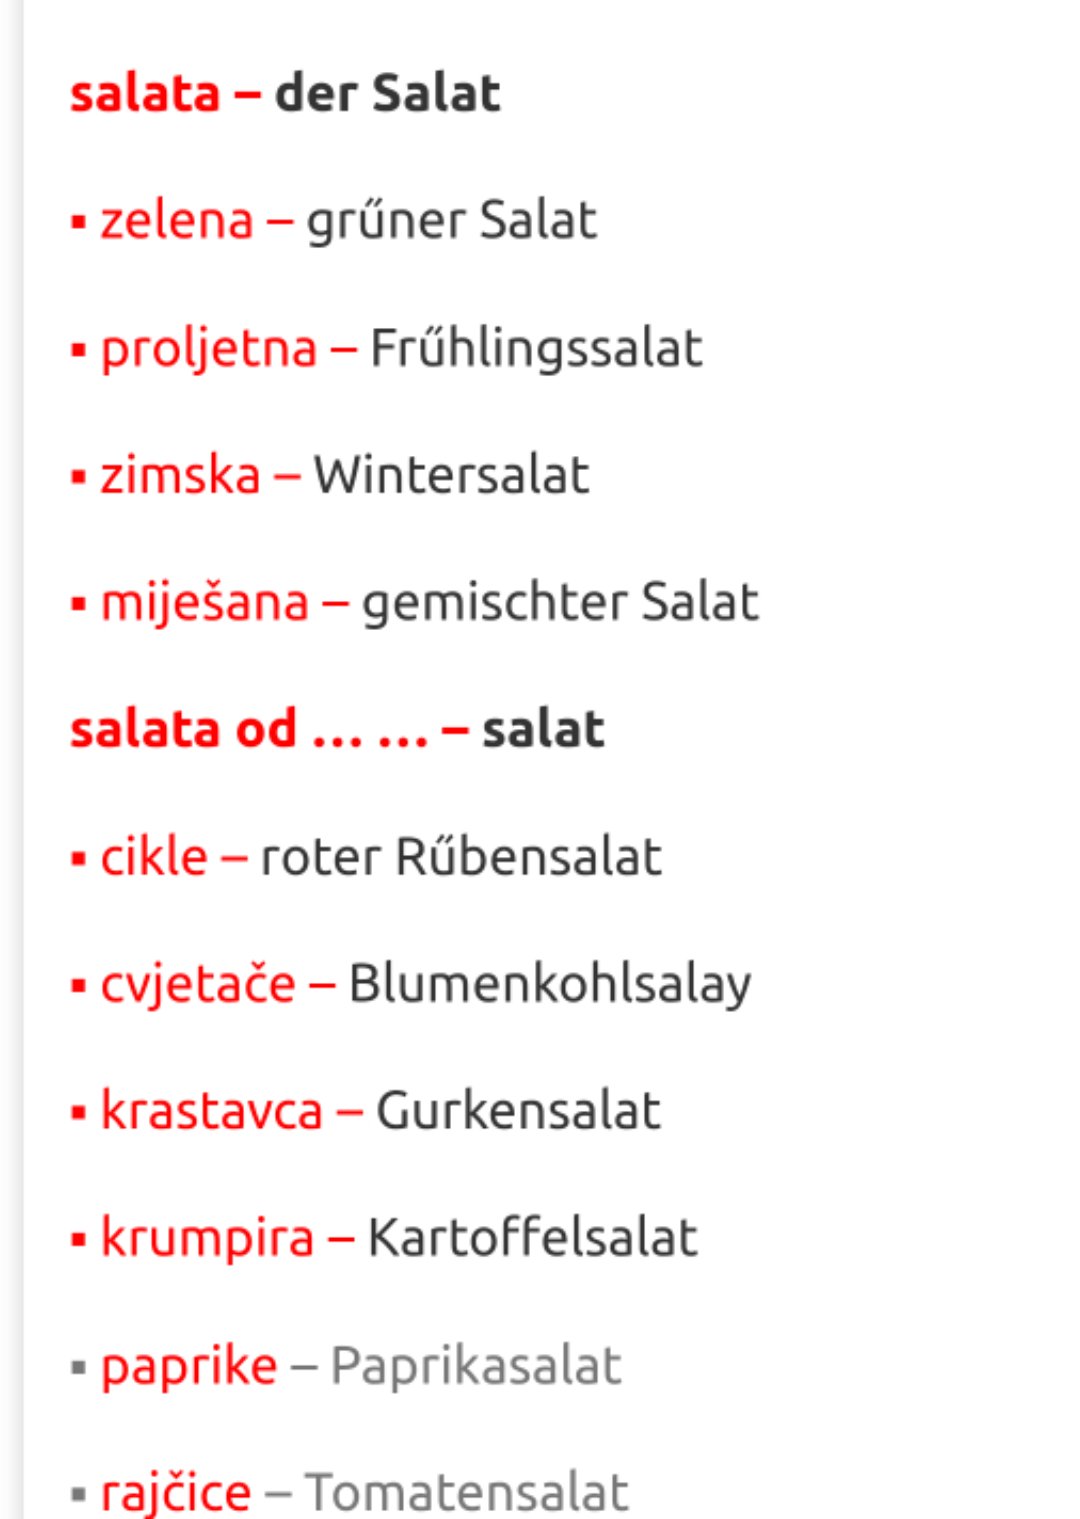 salata - SALATE – SALATE